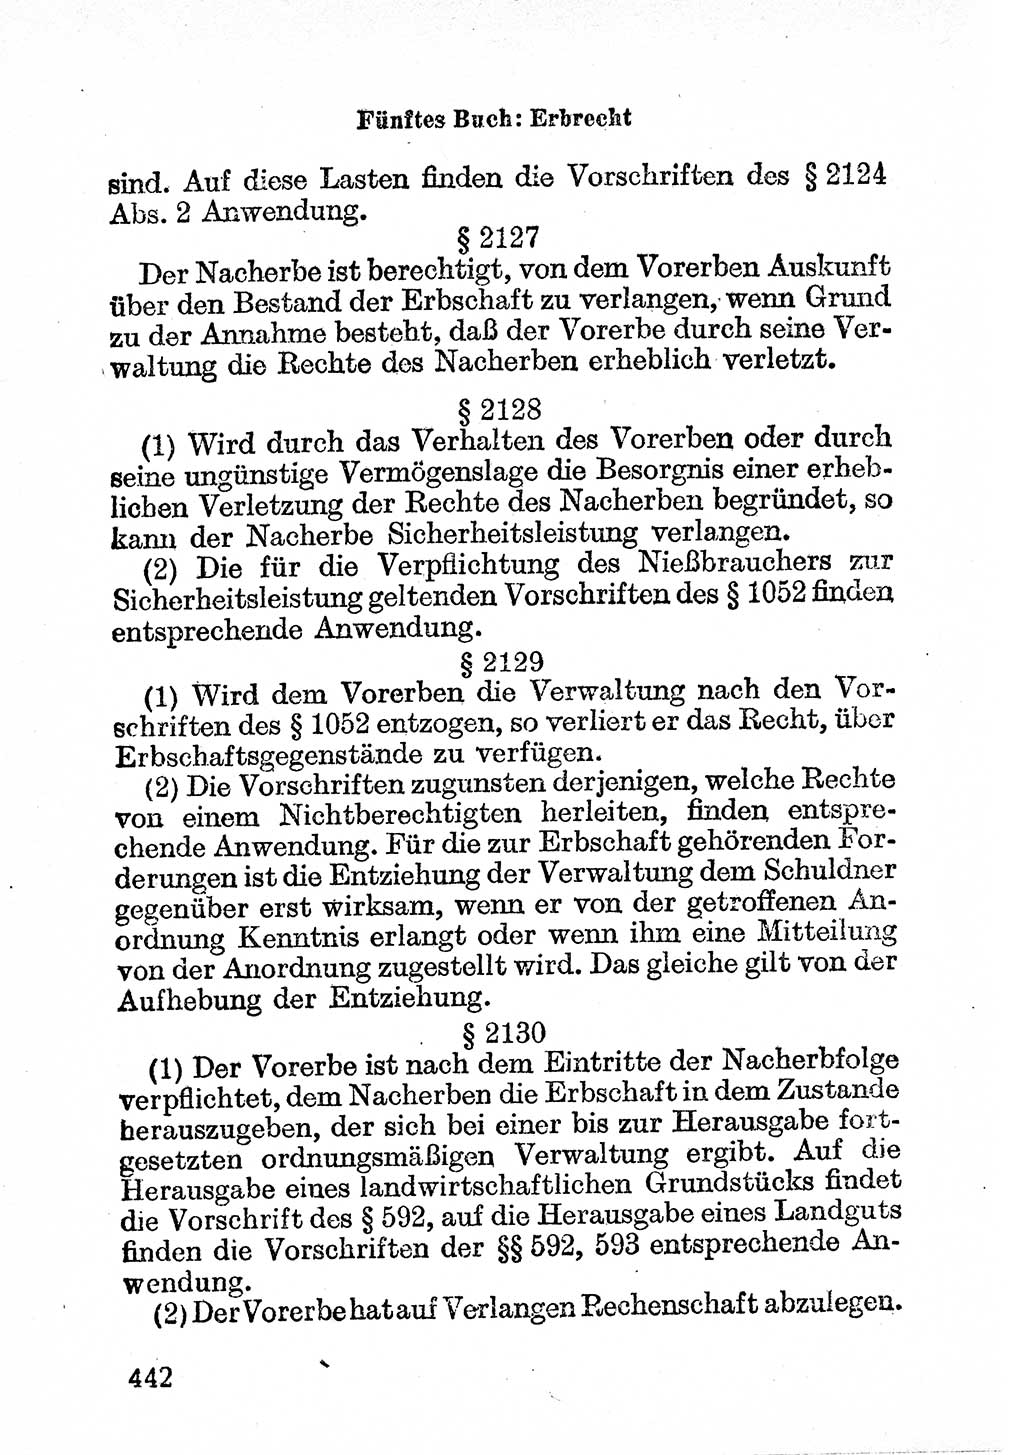 BÃ¼rgerliches Gesetzbuch (BGB) nebst wichtigen Nebengesetzen [Deutsche Demokratische Republik (DDR)] 1956, Seite 442 (BGB Nebenges. DDR 1956, S. 442)